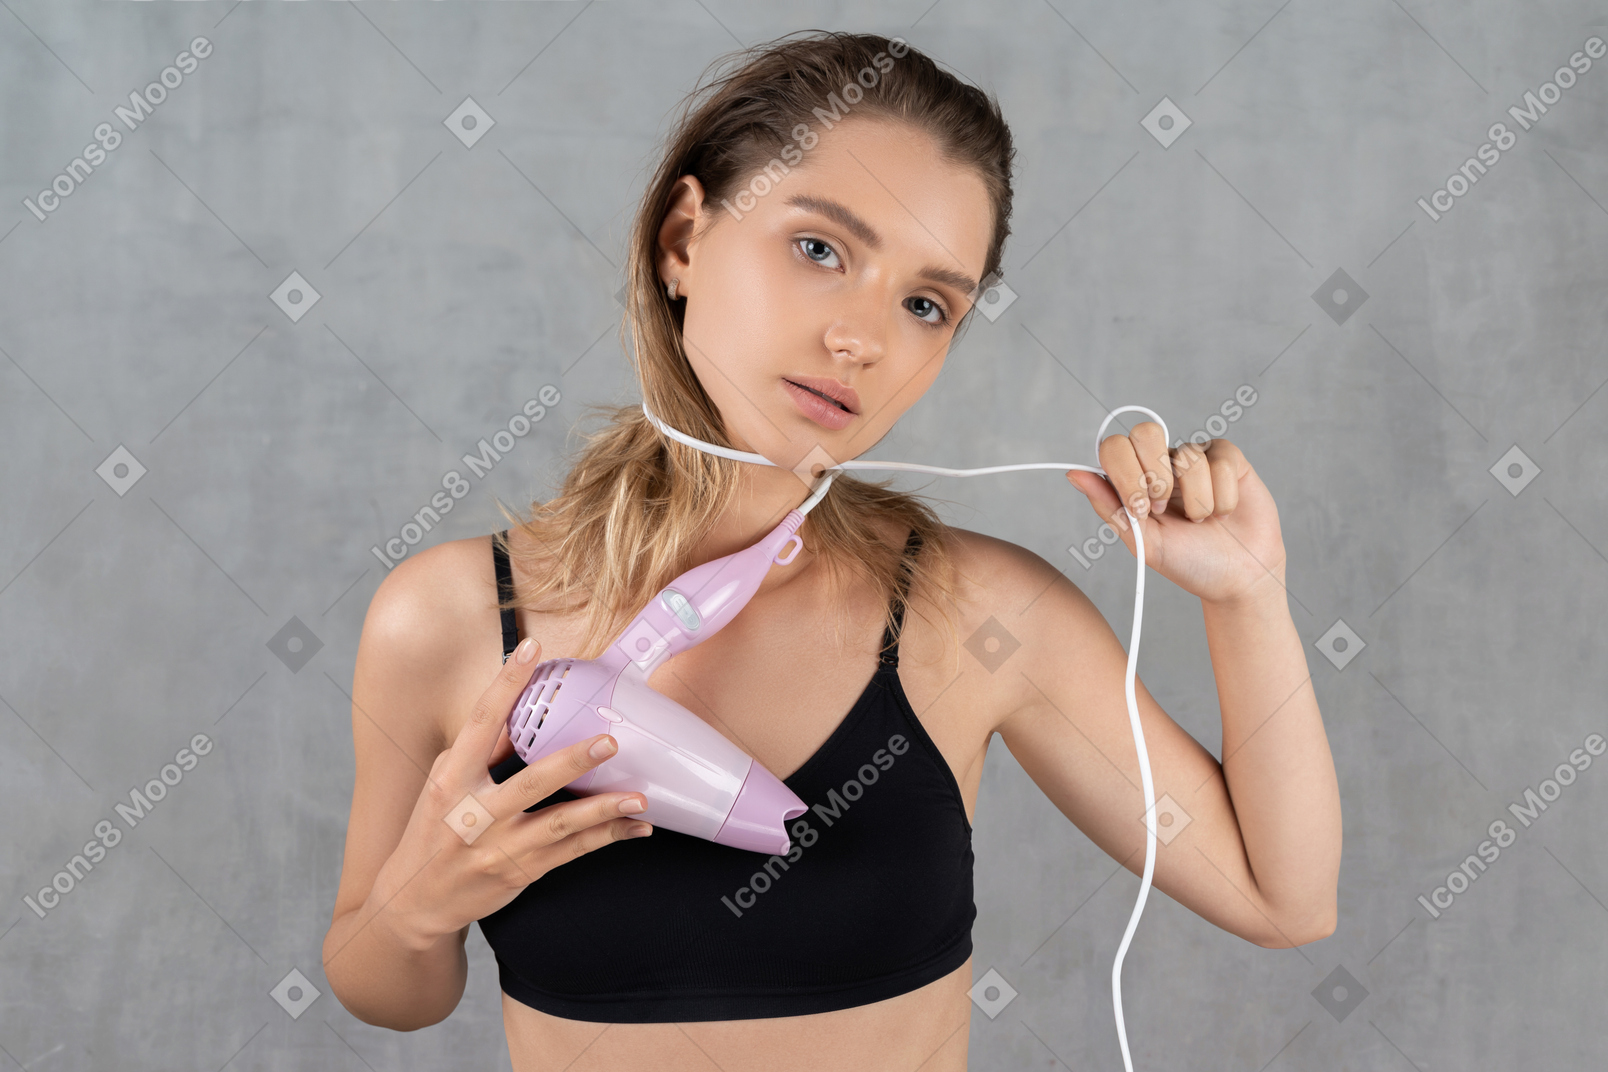 Vista frontal de uma jovem enrolando um fio de secador de cabelo em volta do pescoço